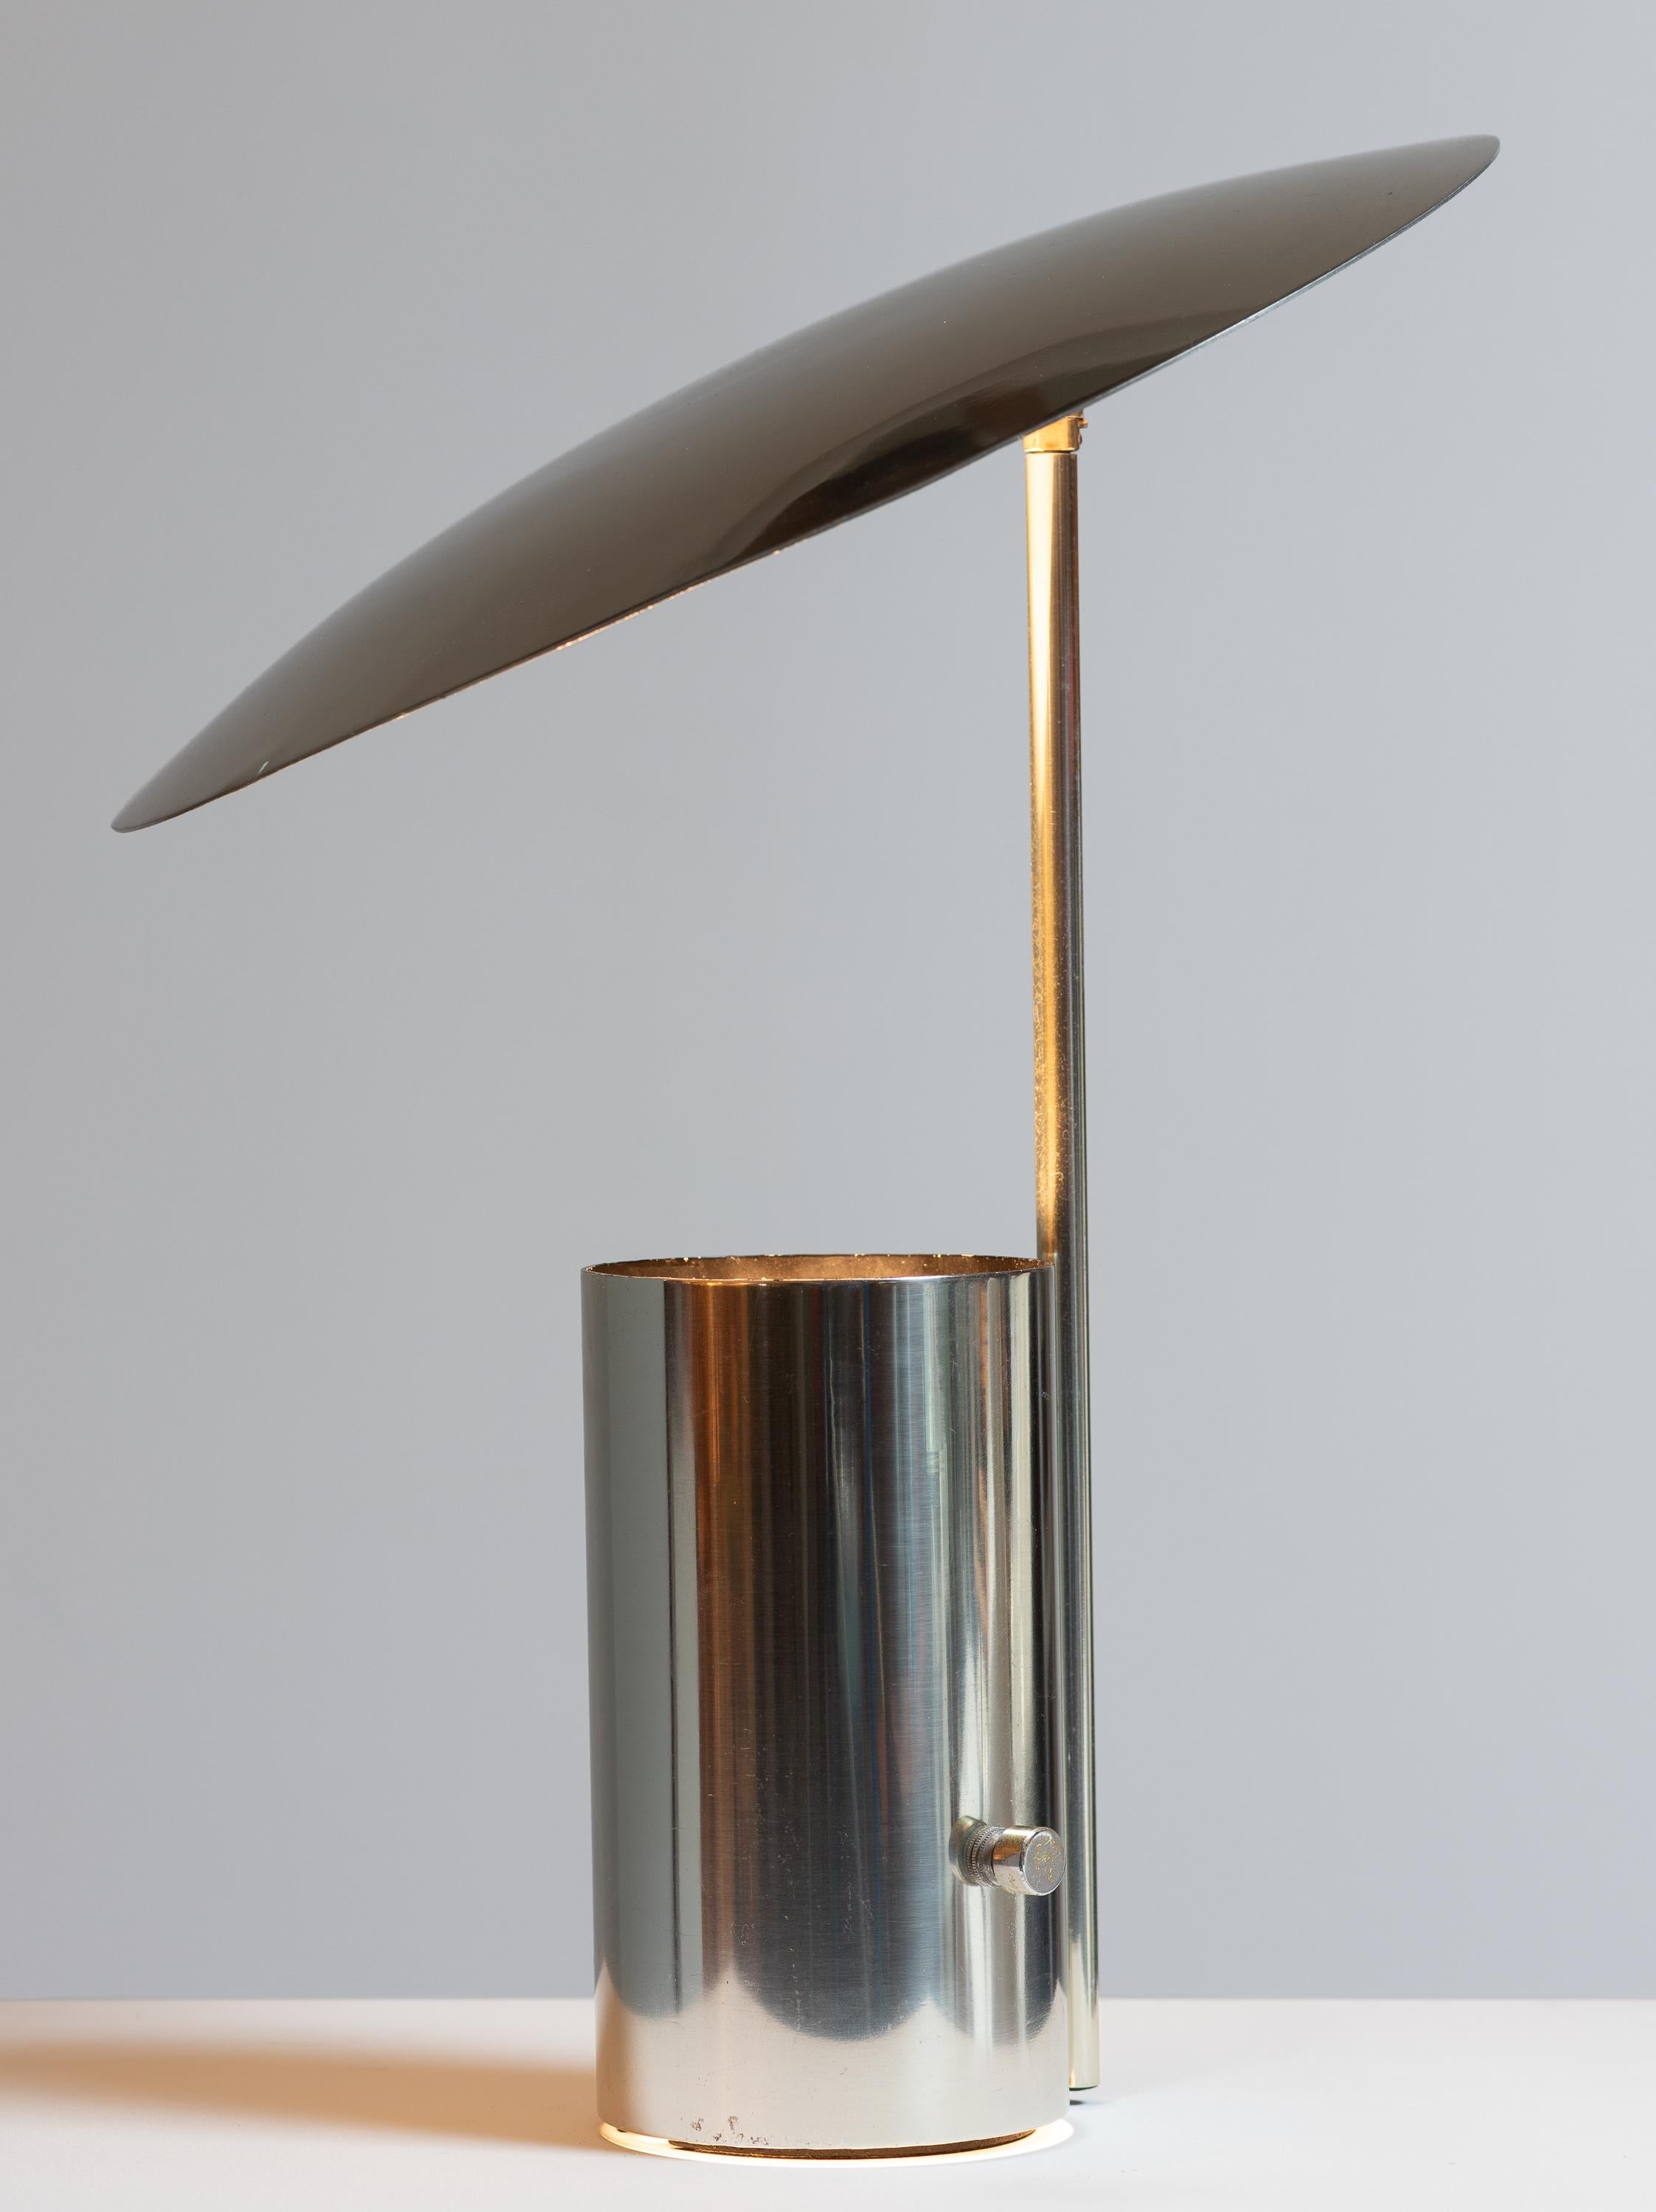 Half Nelson Tischleuchte, entworfen von George Nelson für Koch und Lowy. Ein durchdachtes Design mit einem schwenkbaren Schirm aus gedrehtem Aluminium, der eine individuell anpassbare Beleuchtung bietet. Die Zwei-Wege-Lichtquelle ist in der